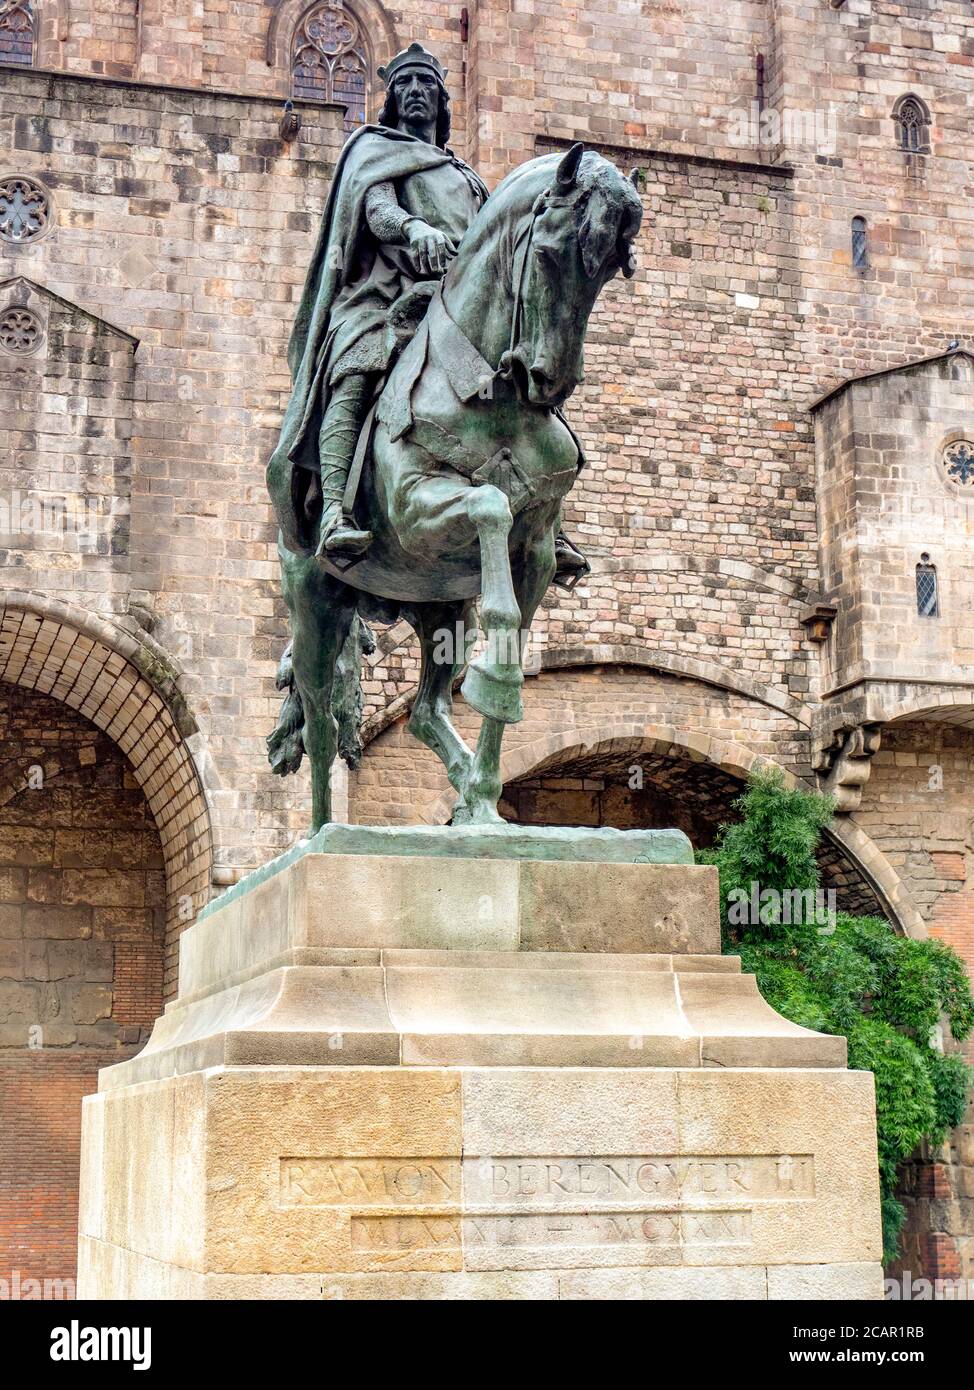 4 marzo 2020: Barcellona, Spagna - statua equestre di Ramon Berenguer III, Conte di Barcellona, in Via Laietana, Barcellona, di Josep Llimona. Foto Stock